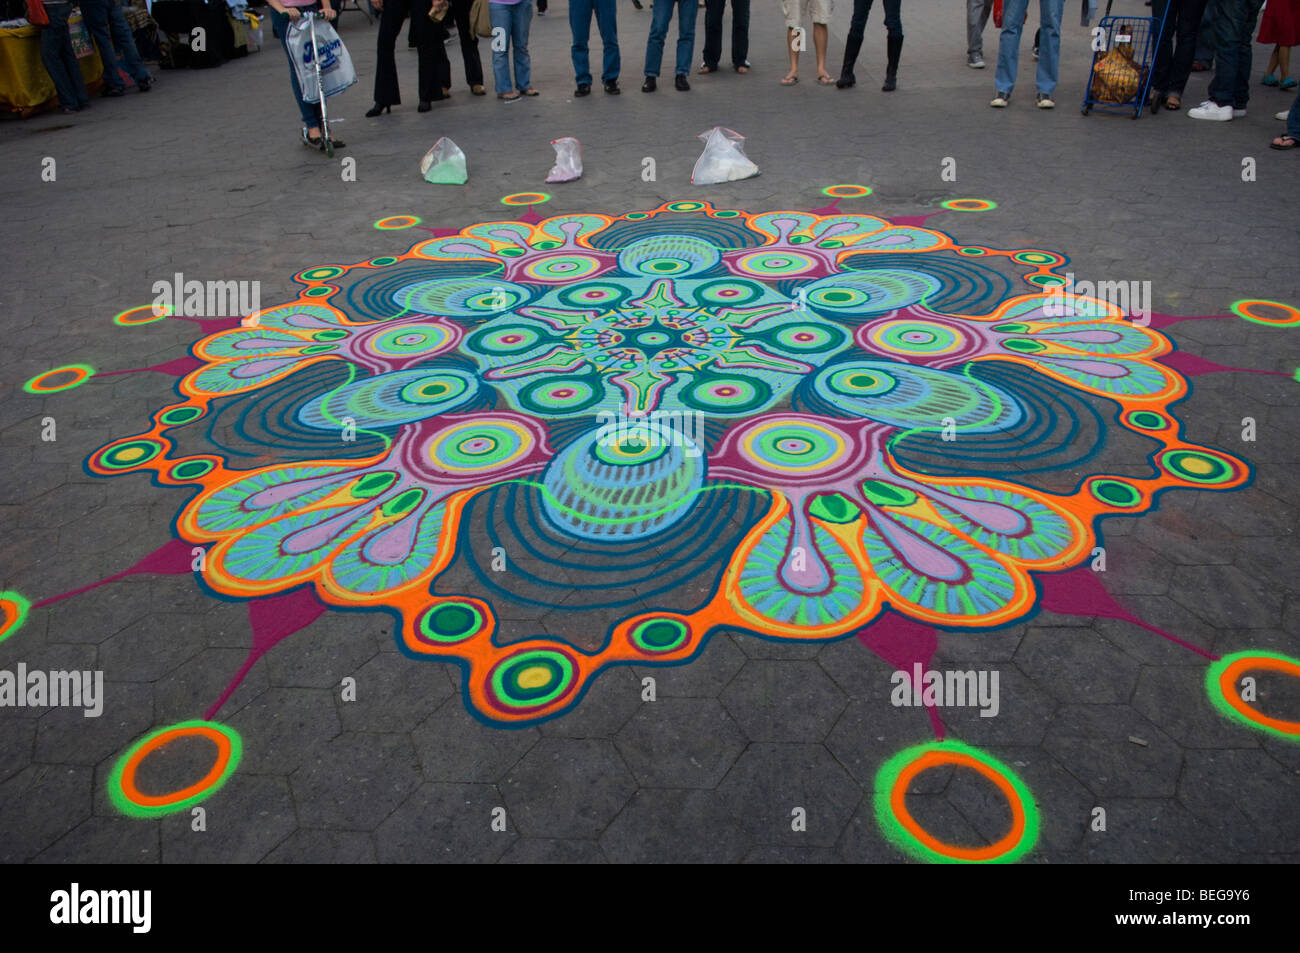 Mangrum Joe crée une peinture à l'aide de sable de couleur dans l'Union Square à New York Banque D'Images